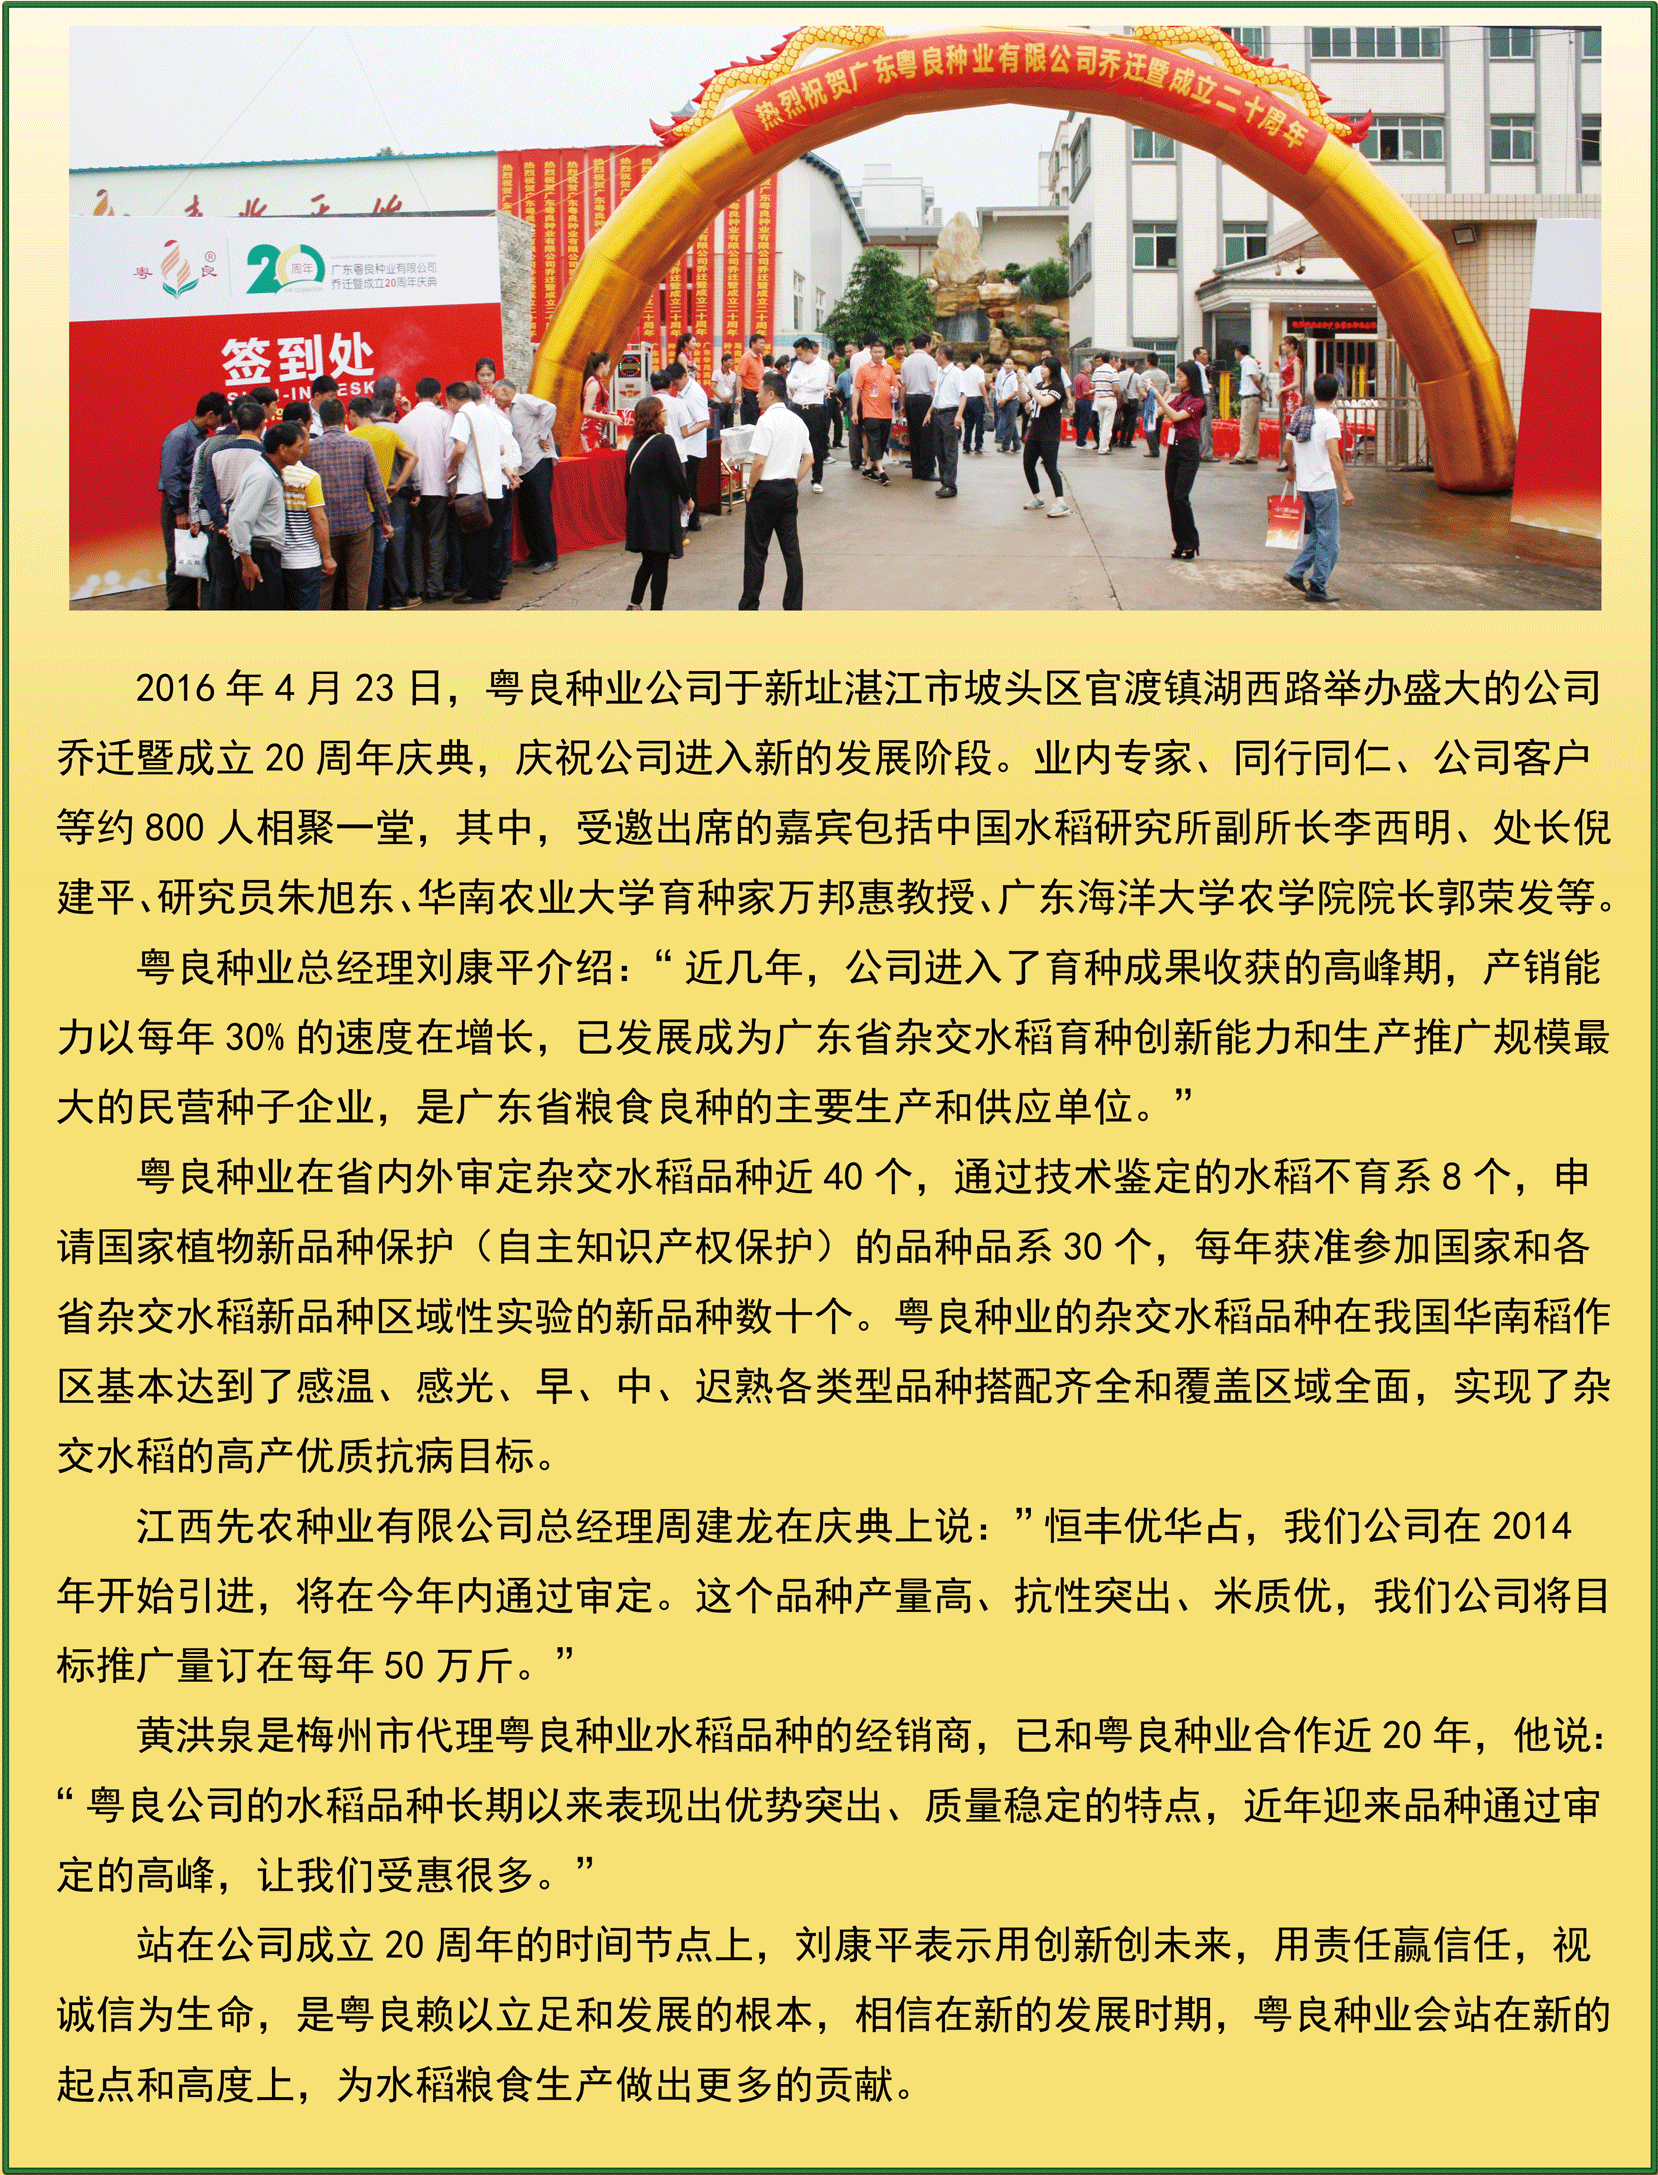 热烈庆祝广东粤良种业有限公司成立20周年